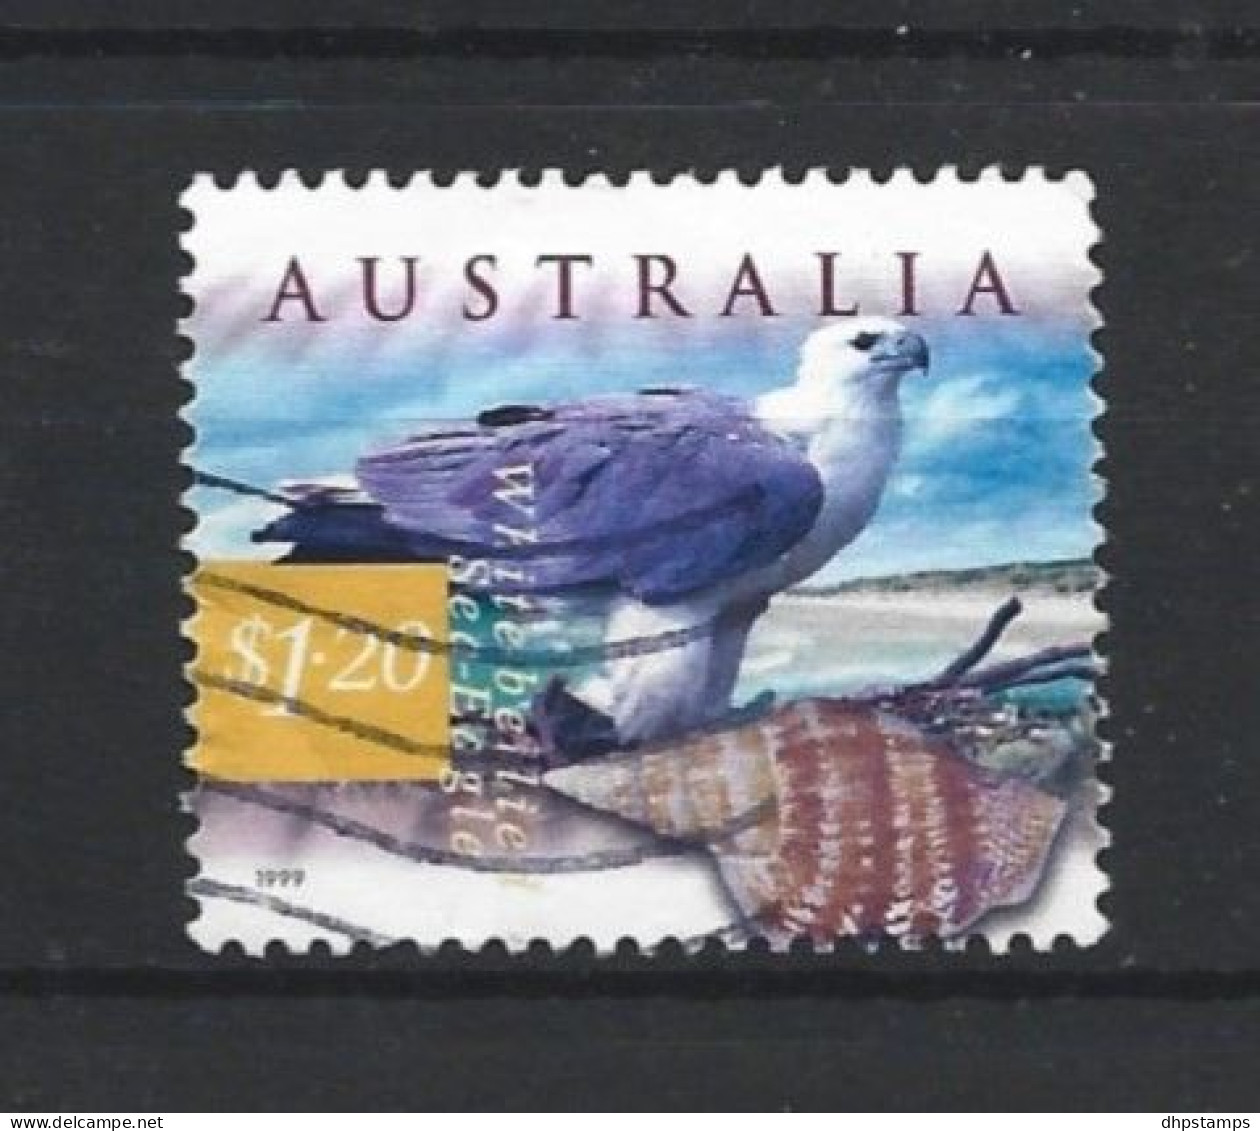 Australia 1999 Fauna  Y.T. 1761 (0) - Gebruikt